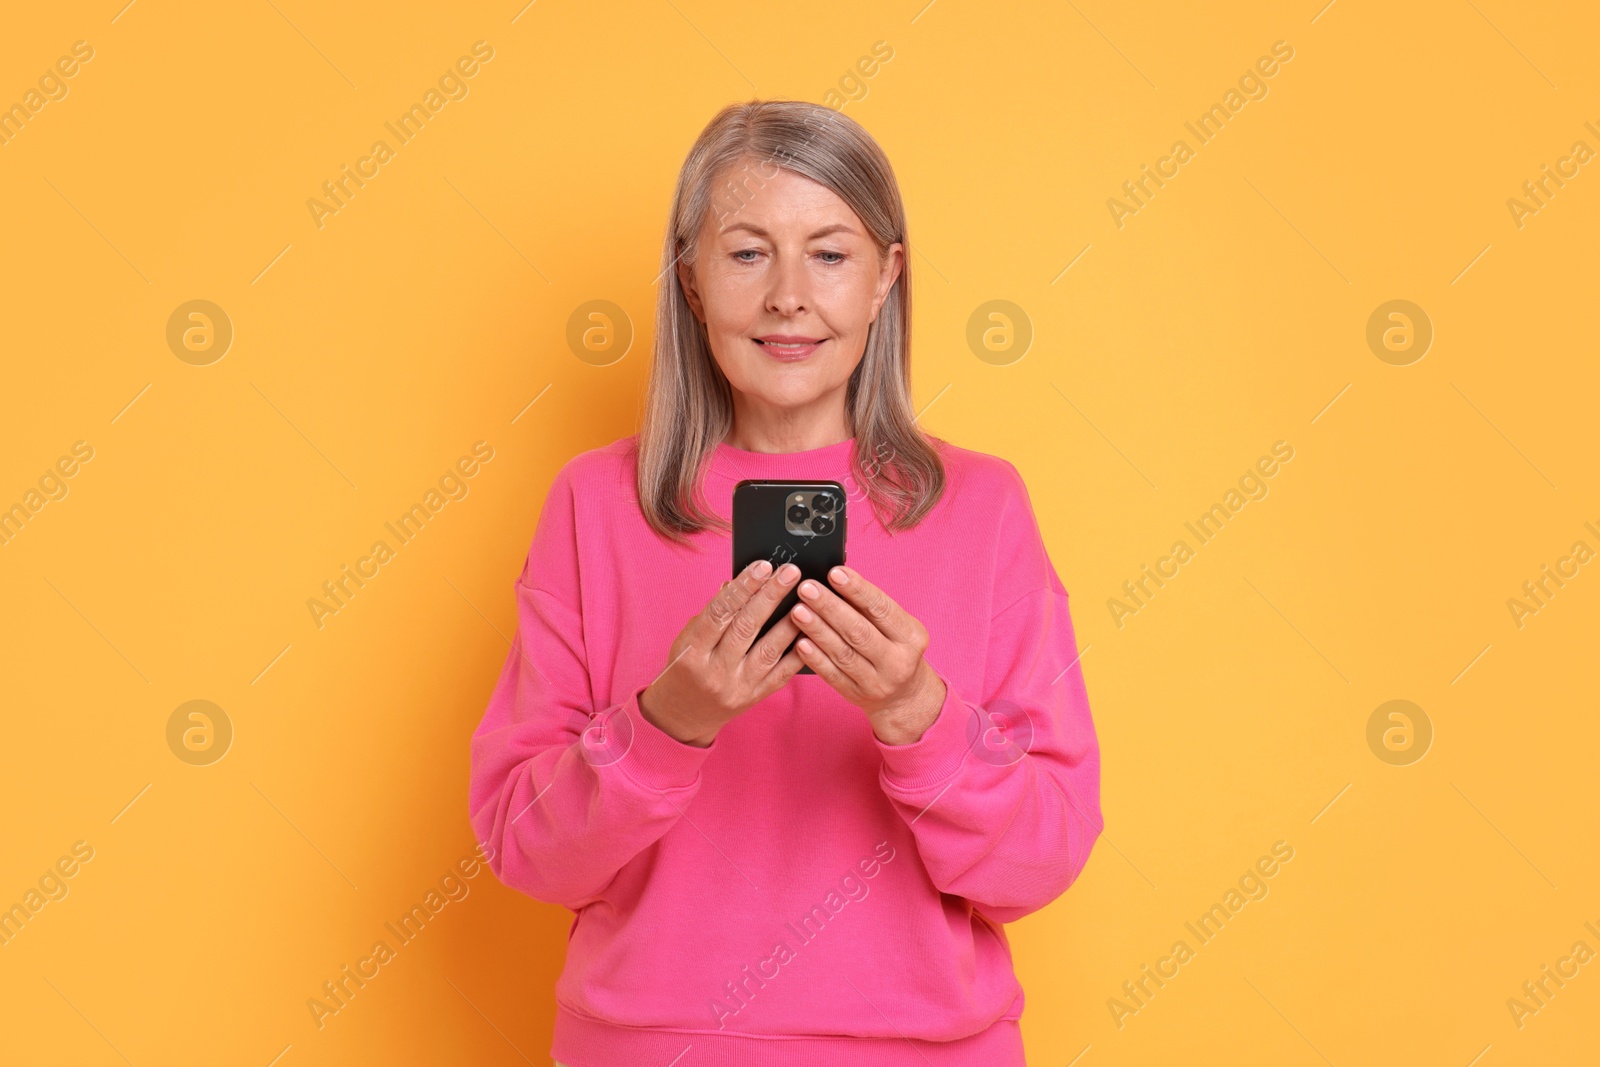 Photo of Senior woman with phone on orange background